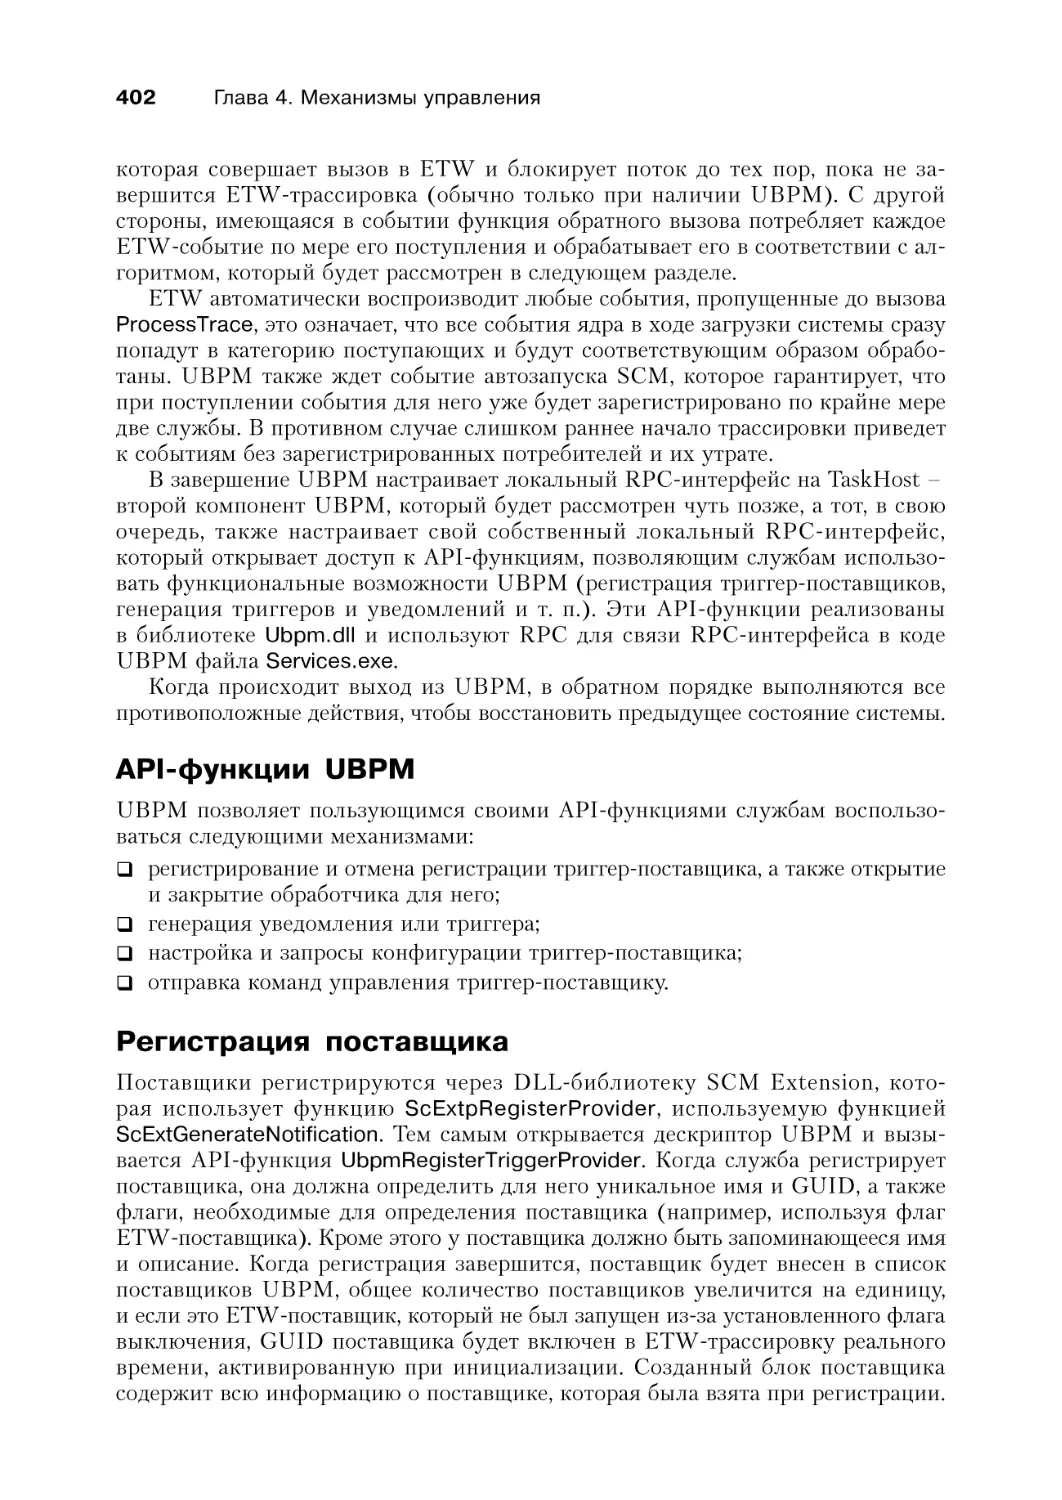 API-функции UBPM
Регистрация поставщика